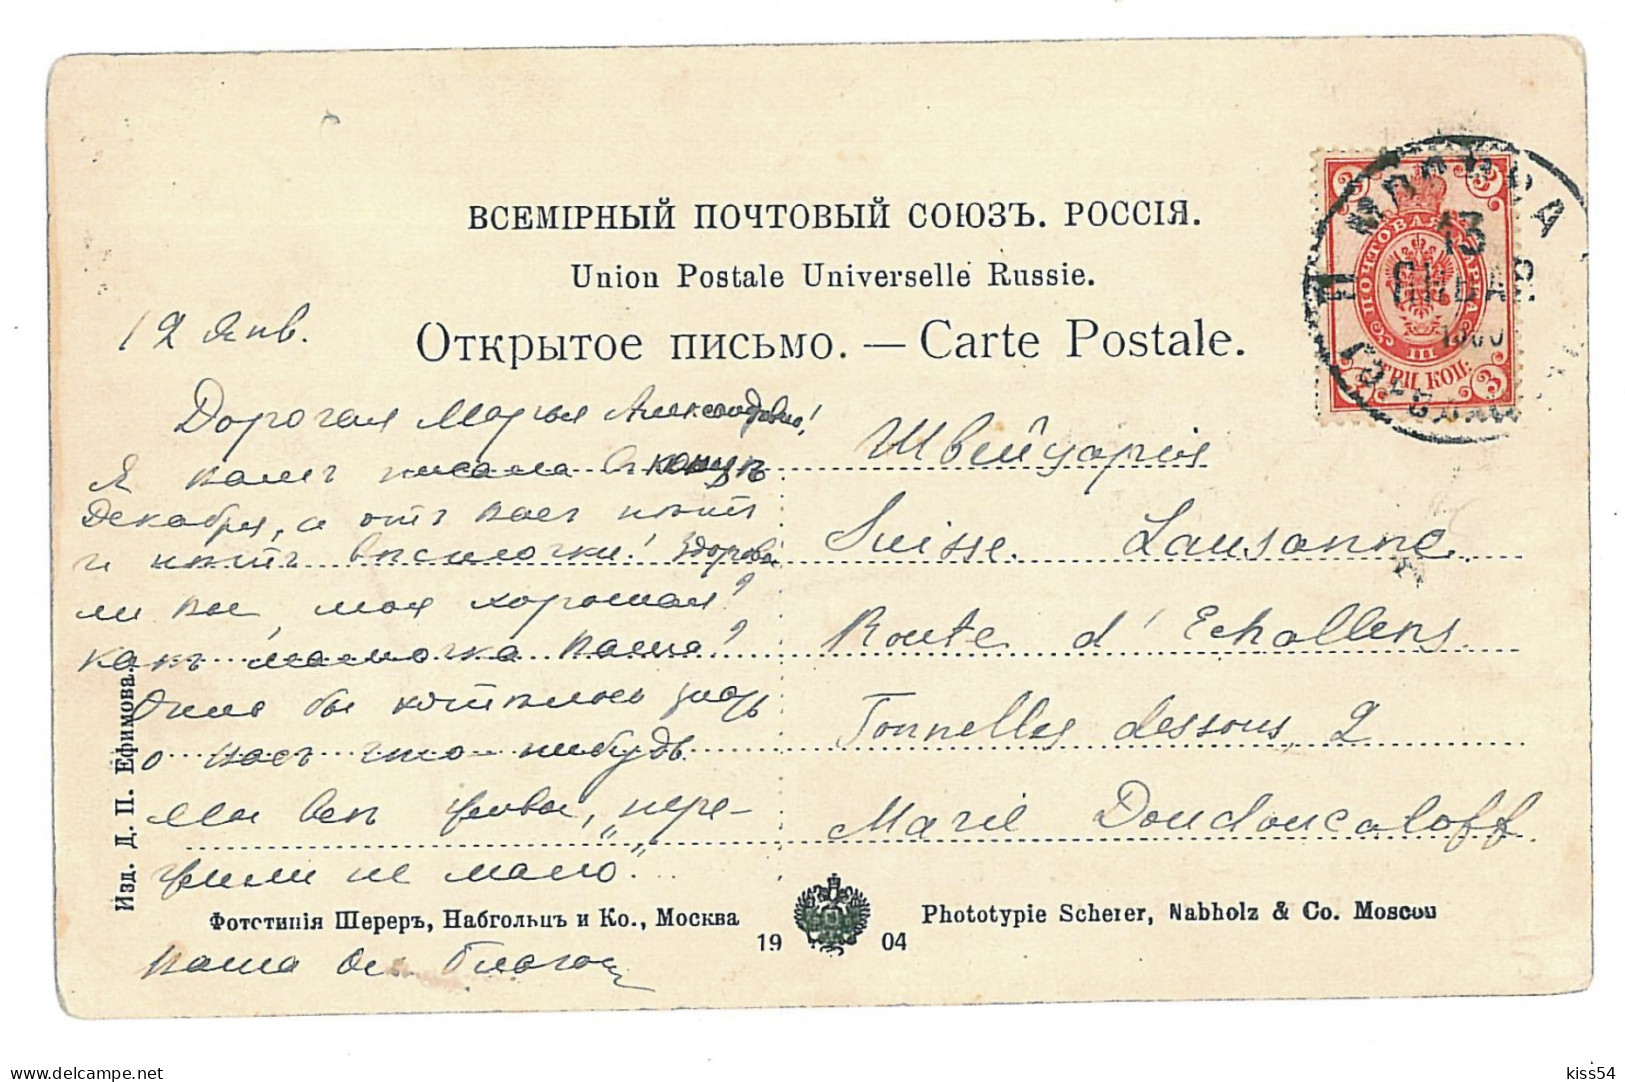 RUS 91 - 9897 VLADIVOSTOCK, Russia, Harbor - Old Postcard - Used - 1903 - Russland